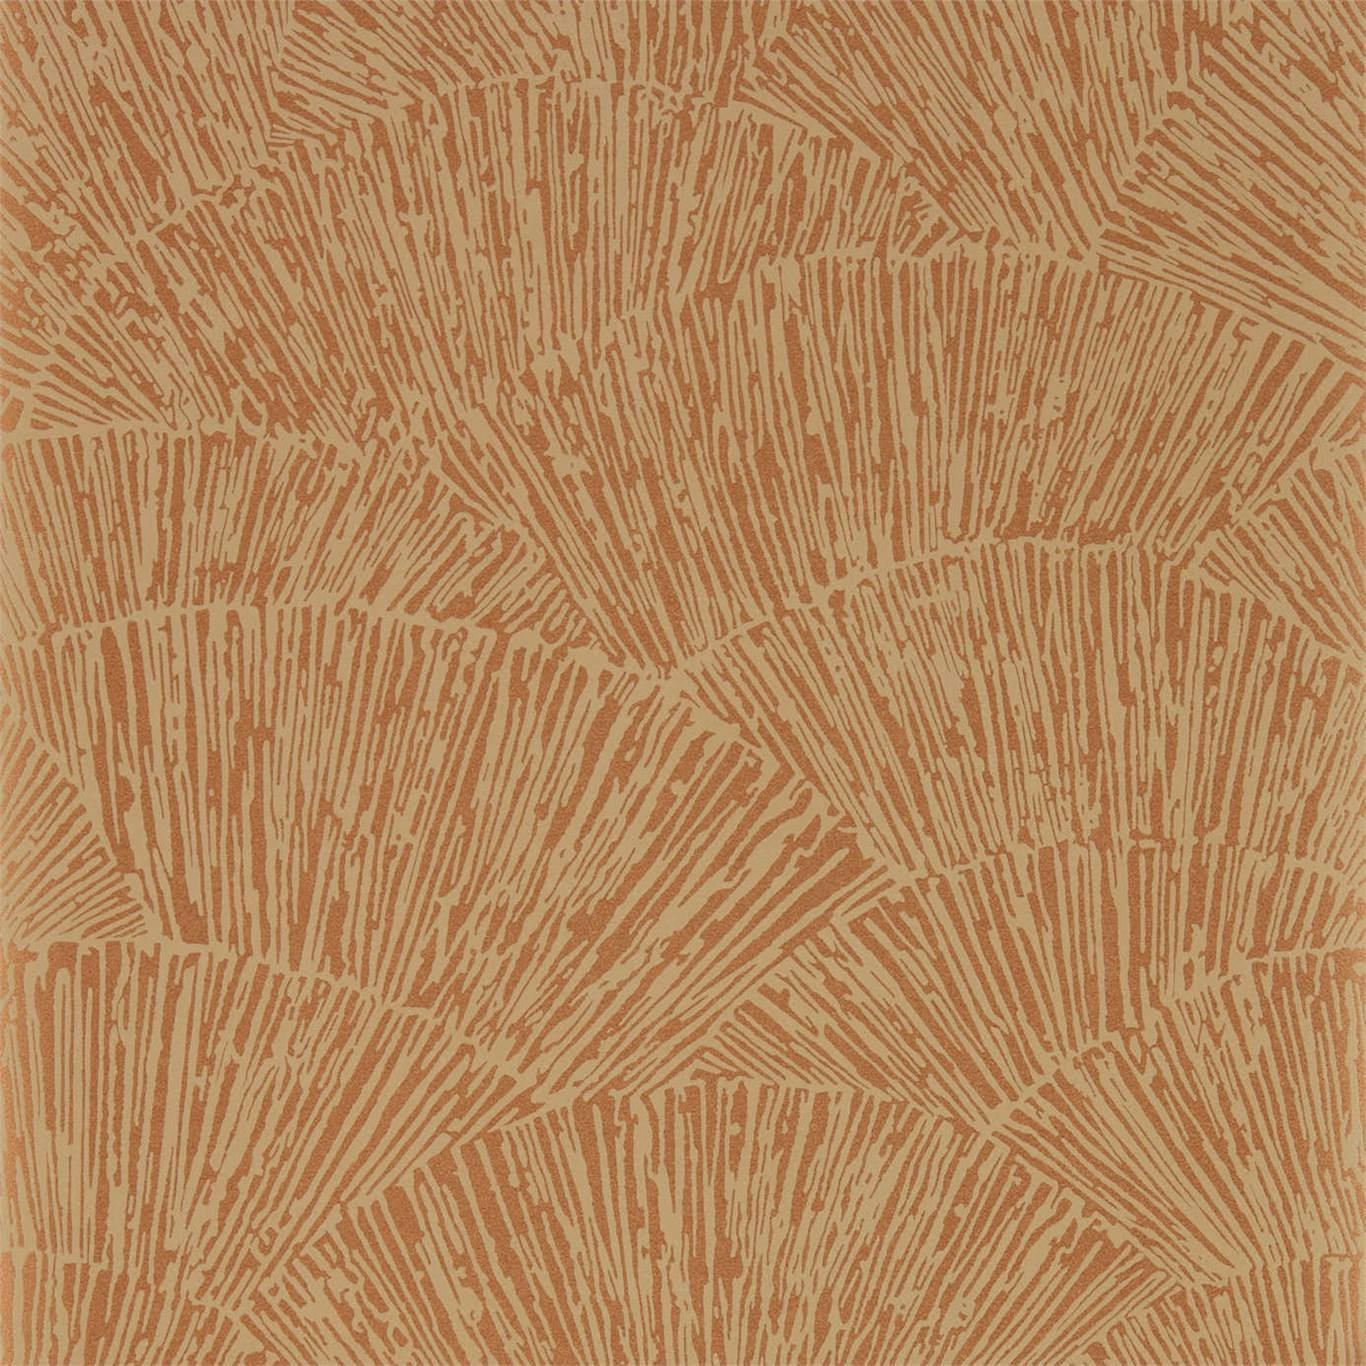 Tessen Copper Wallpaper by HAR